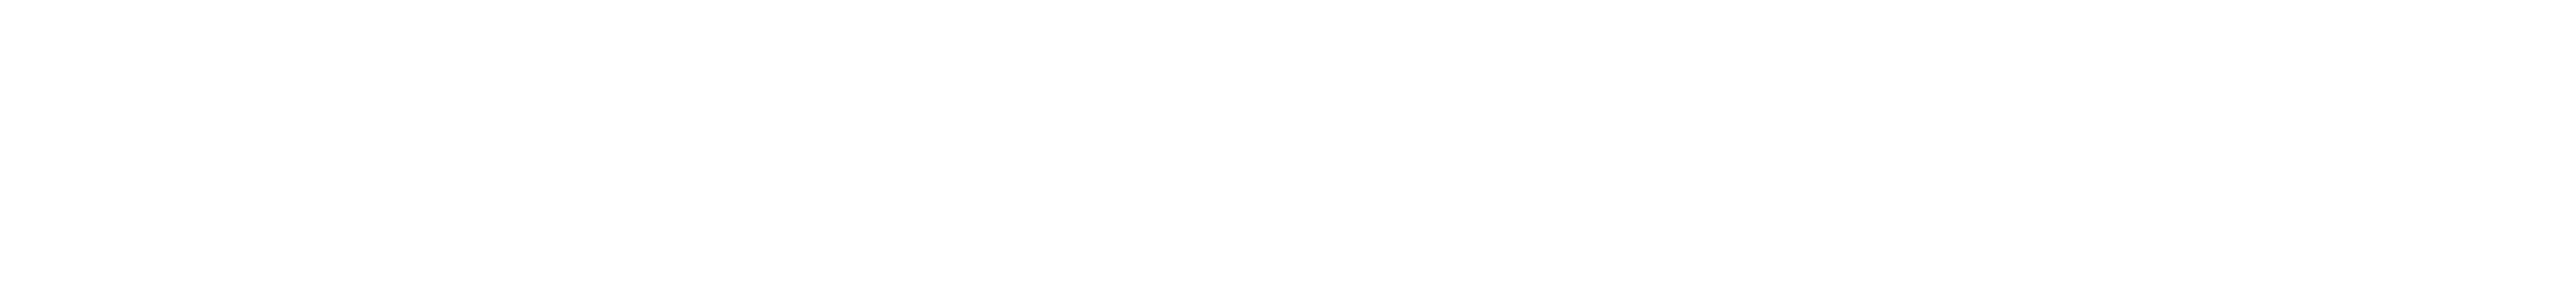 nft-everrose-logo